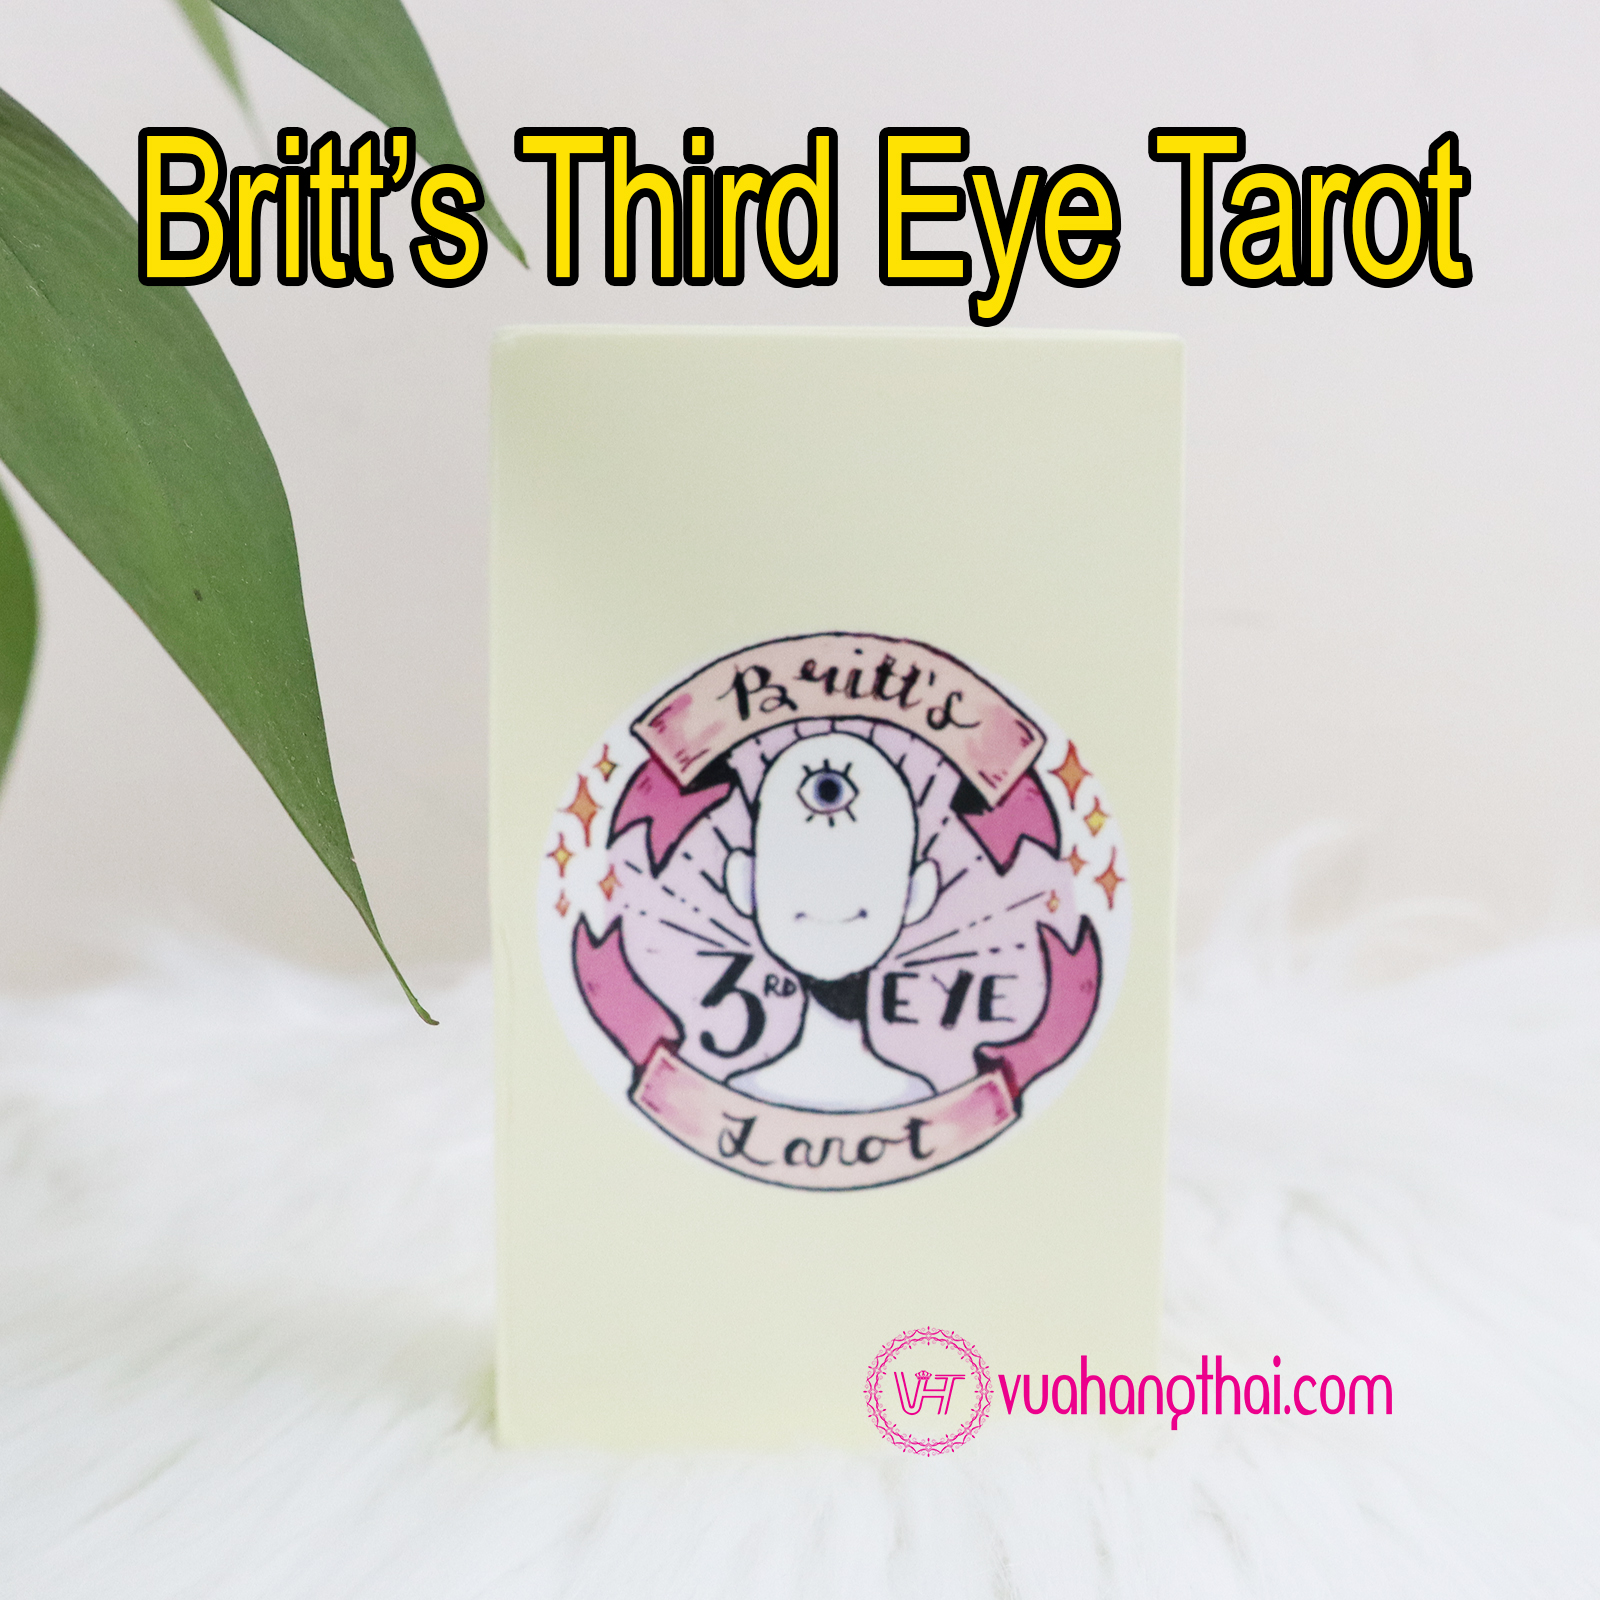 HCMBộ bài bói Britts Third Eye Tarot cao cấp